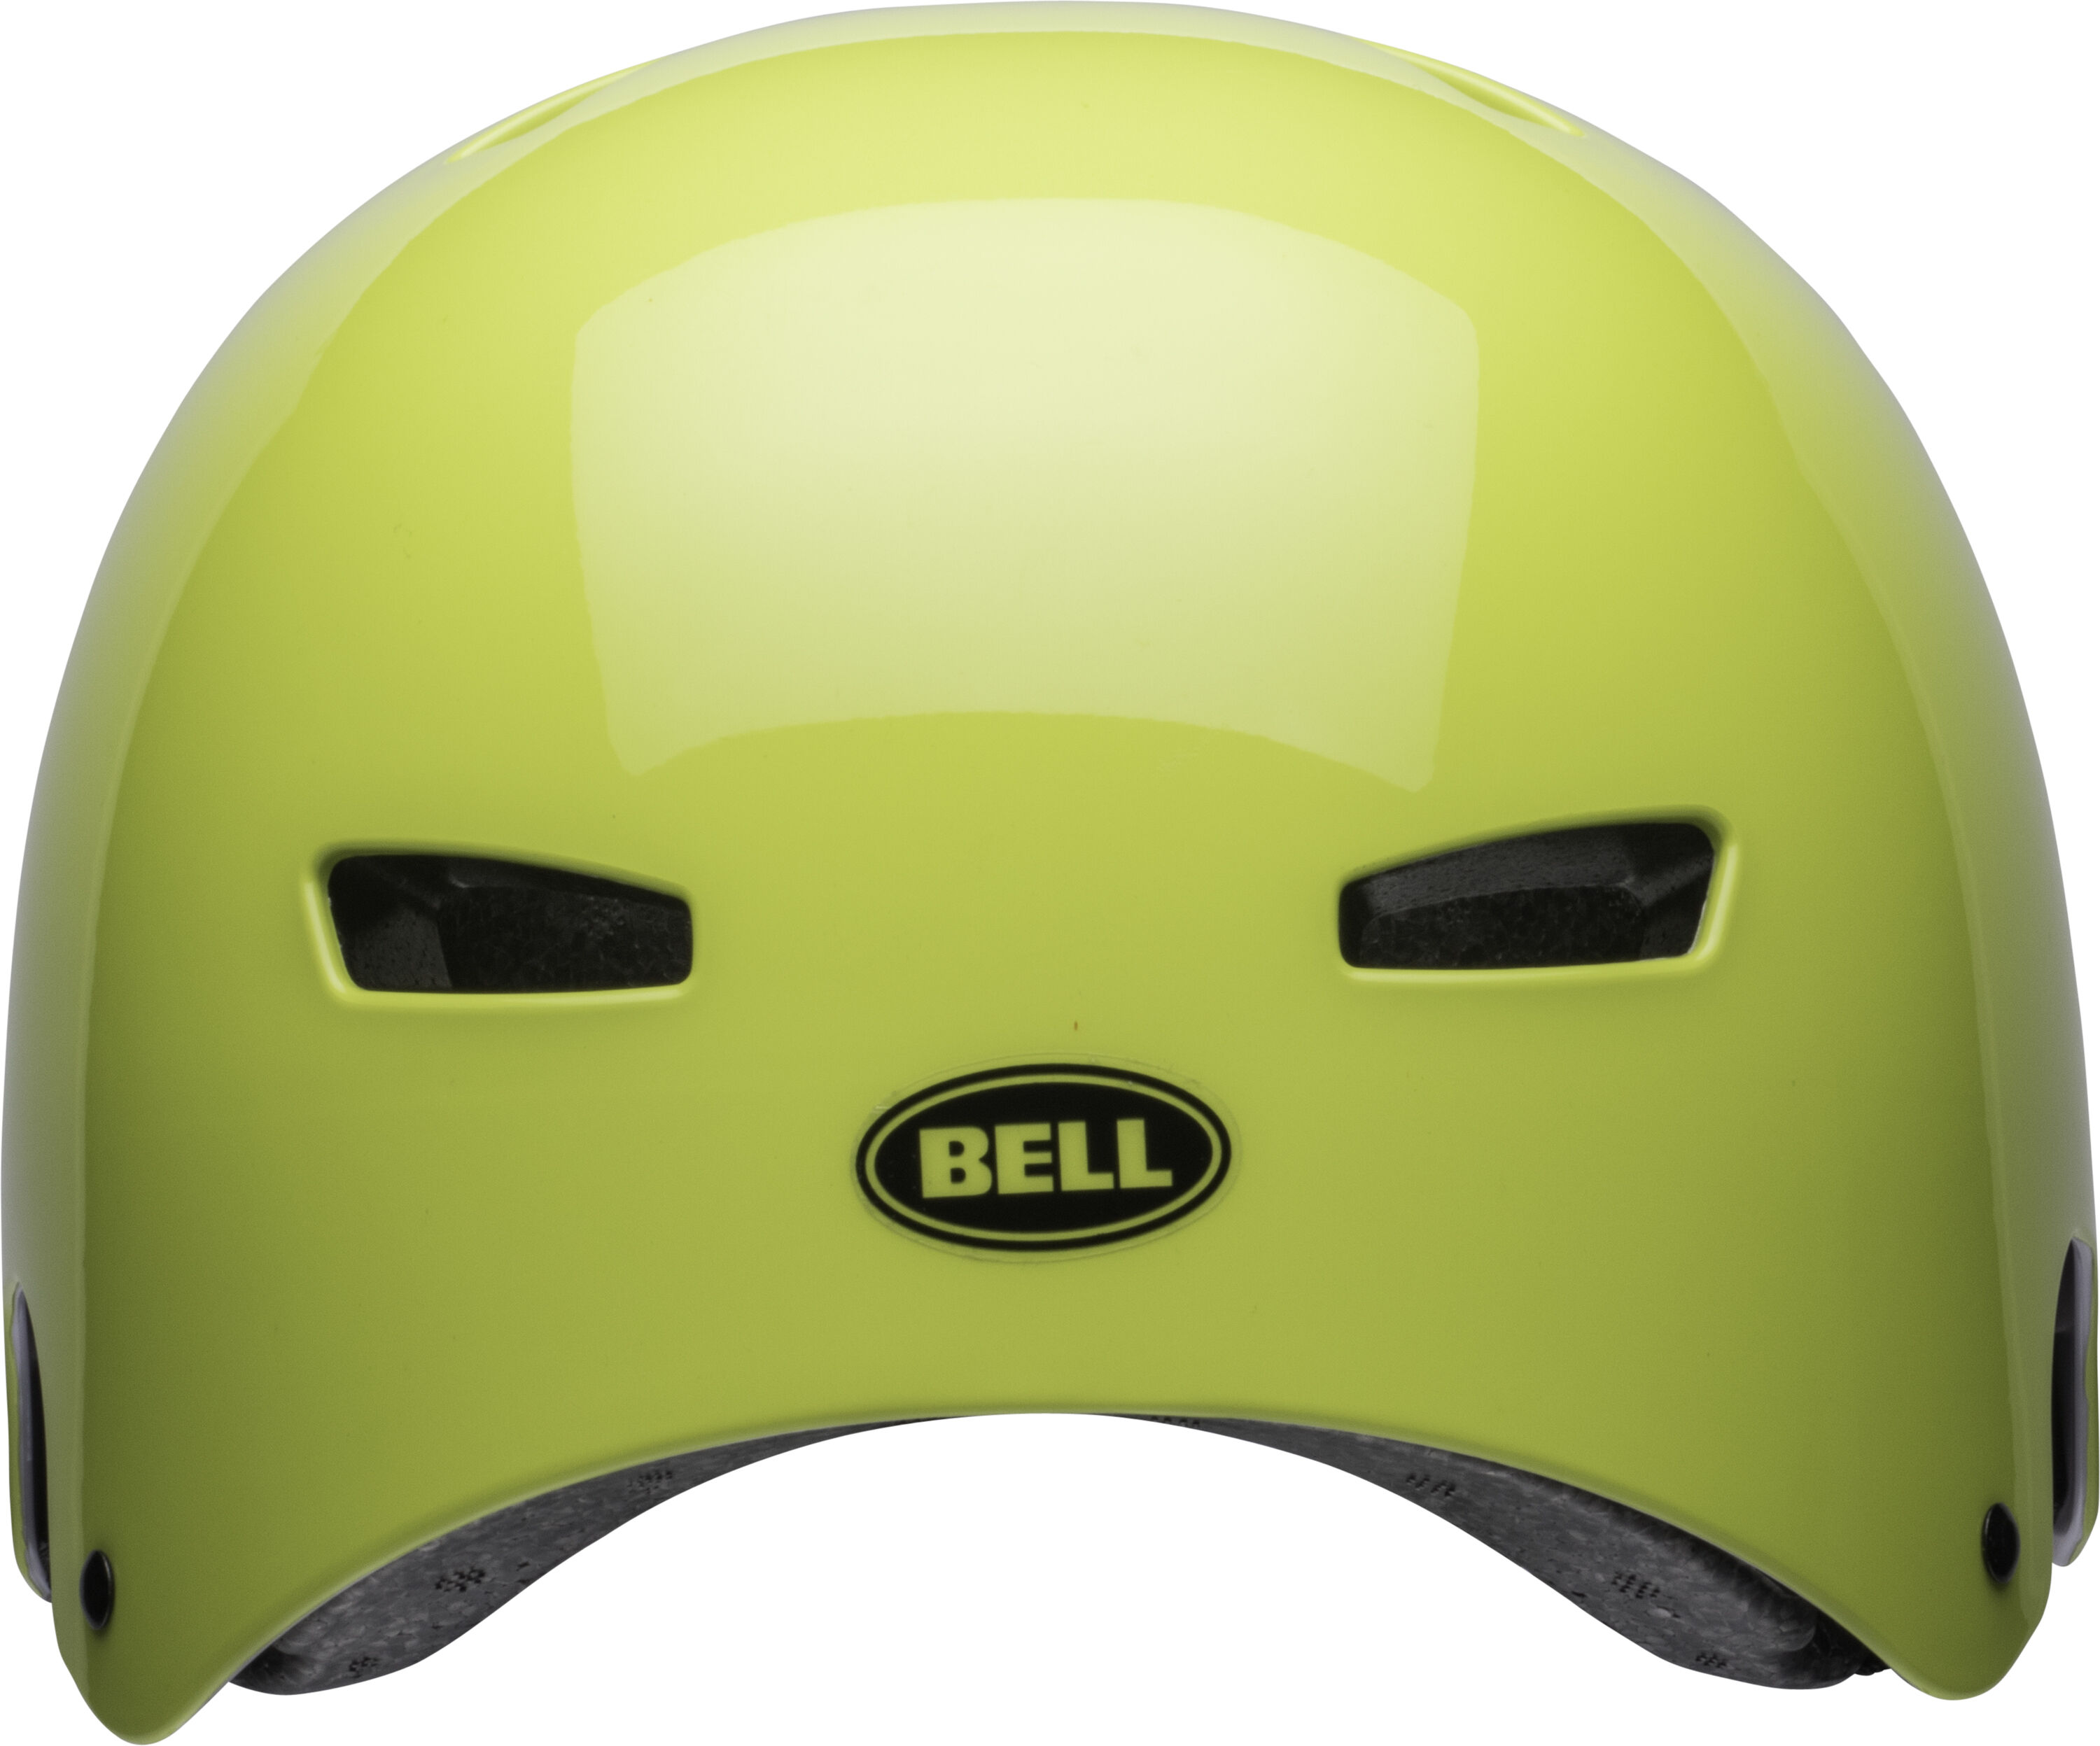 bell multisport helmet